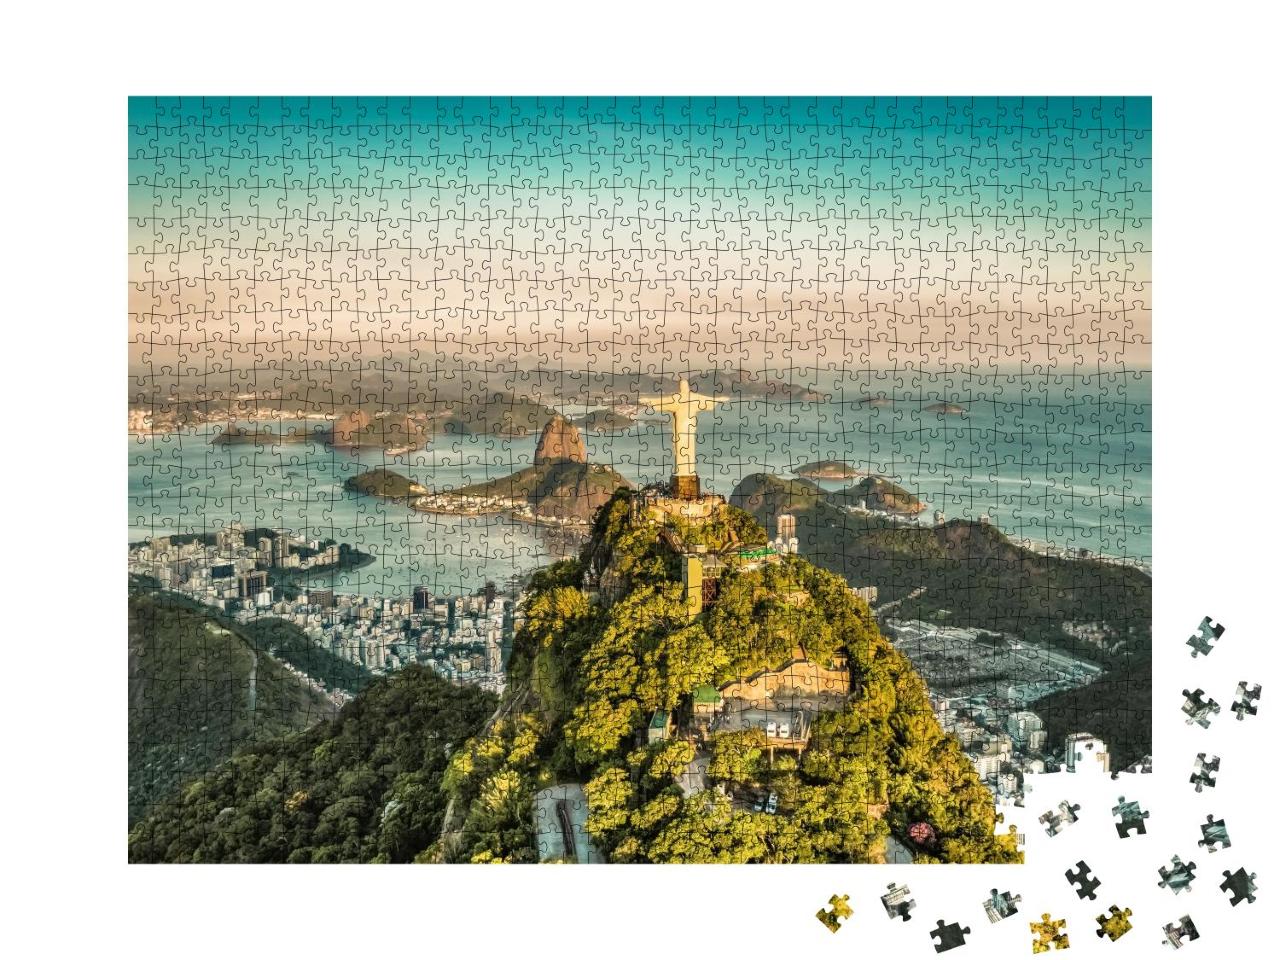 Puzzle 1000 Teile „Luftaufnahme der Botafogo-Bucht aus hohem Winkel, Rio de Janeiro“